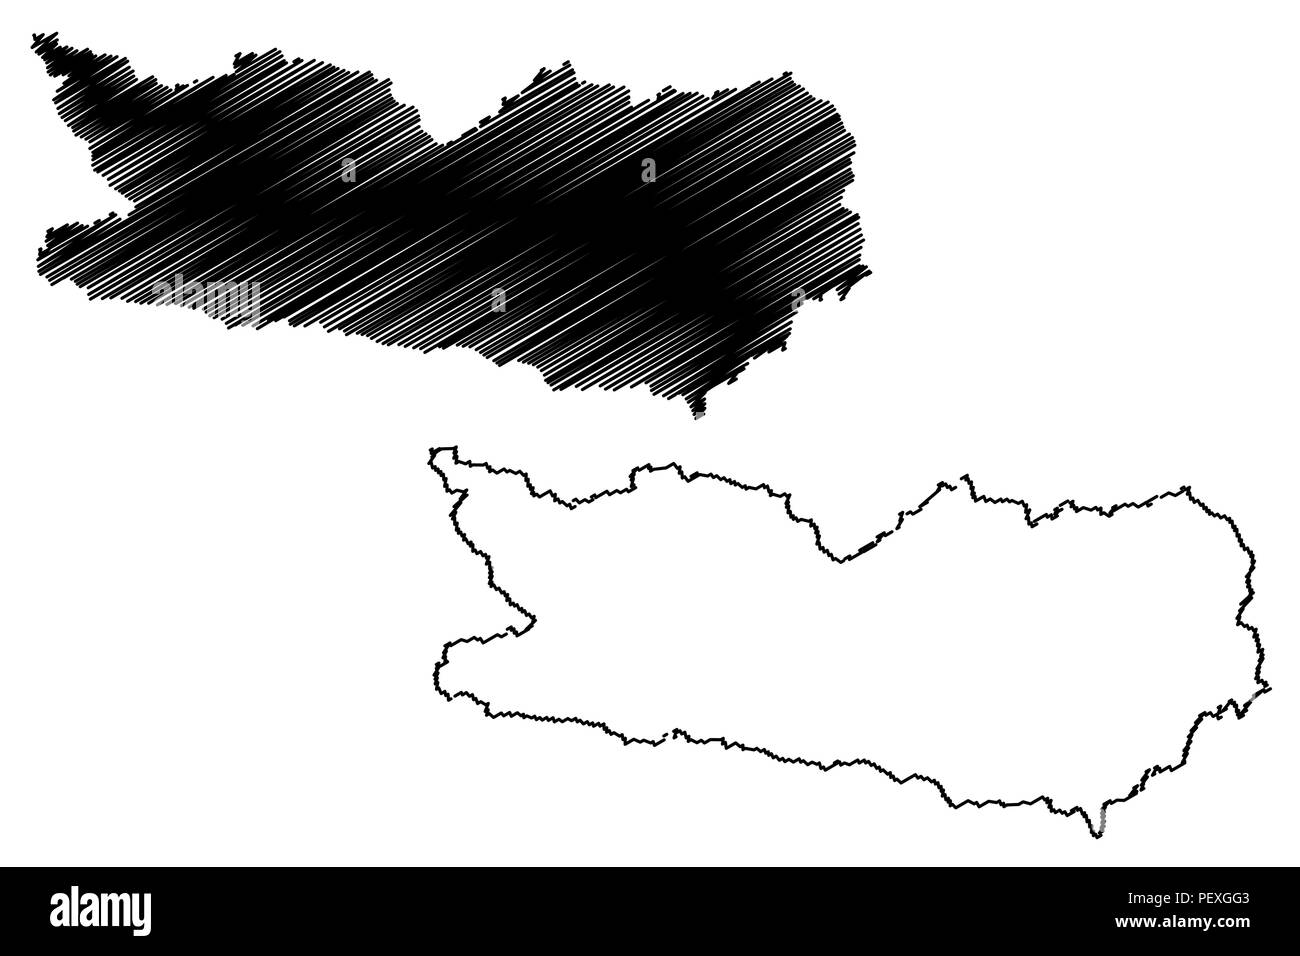 Kärnten (Republik Österreich) Karte Vektor-illustration, kritzeln Skizze Kärnten Karte Stock Vektor